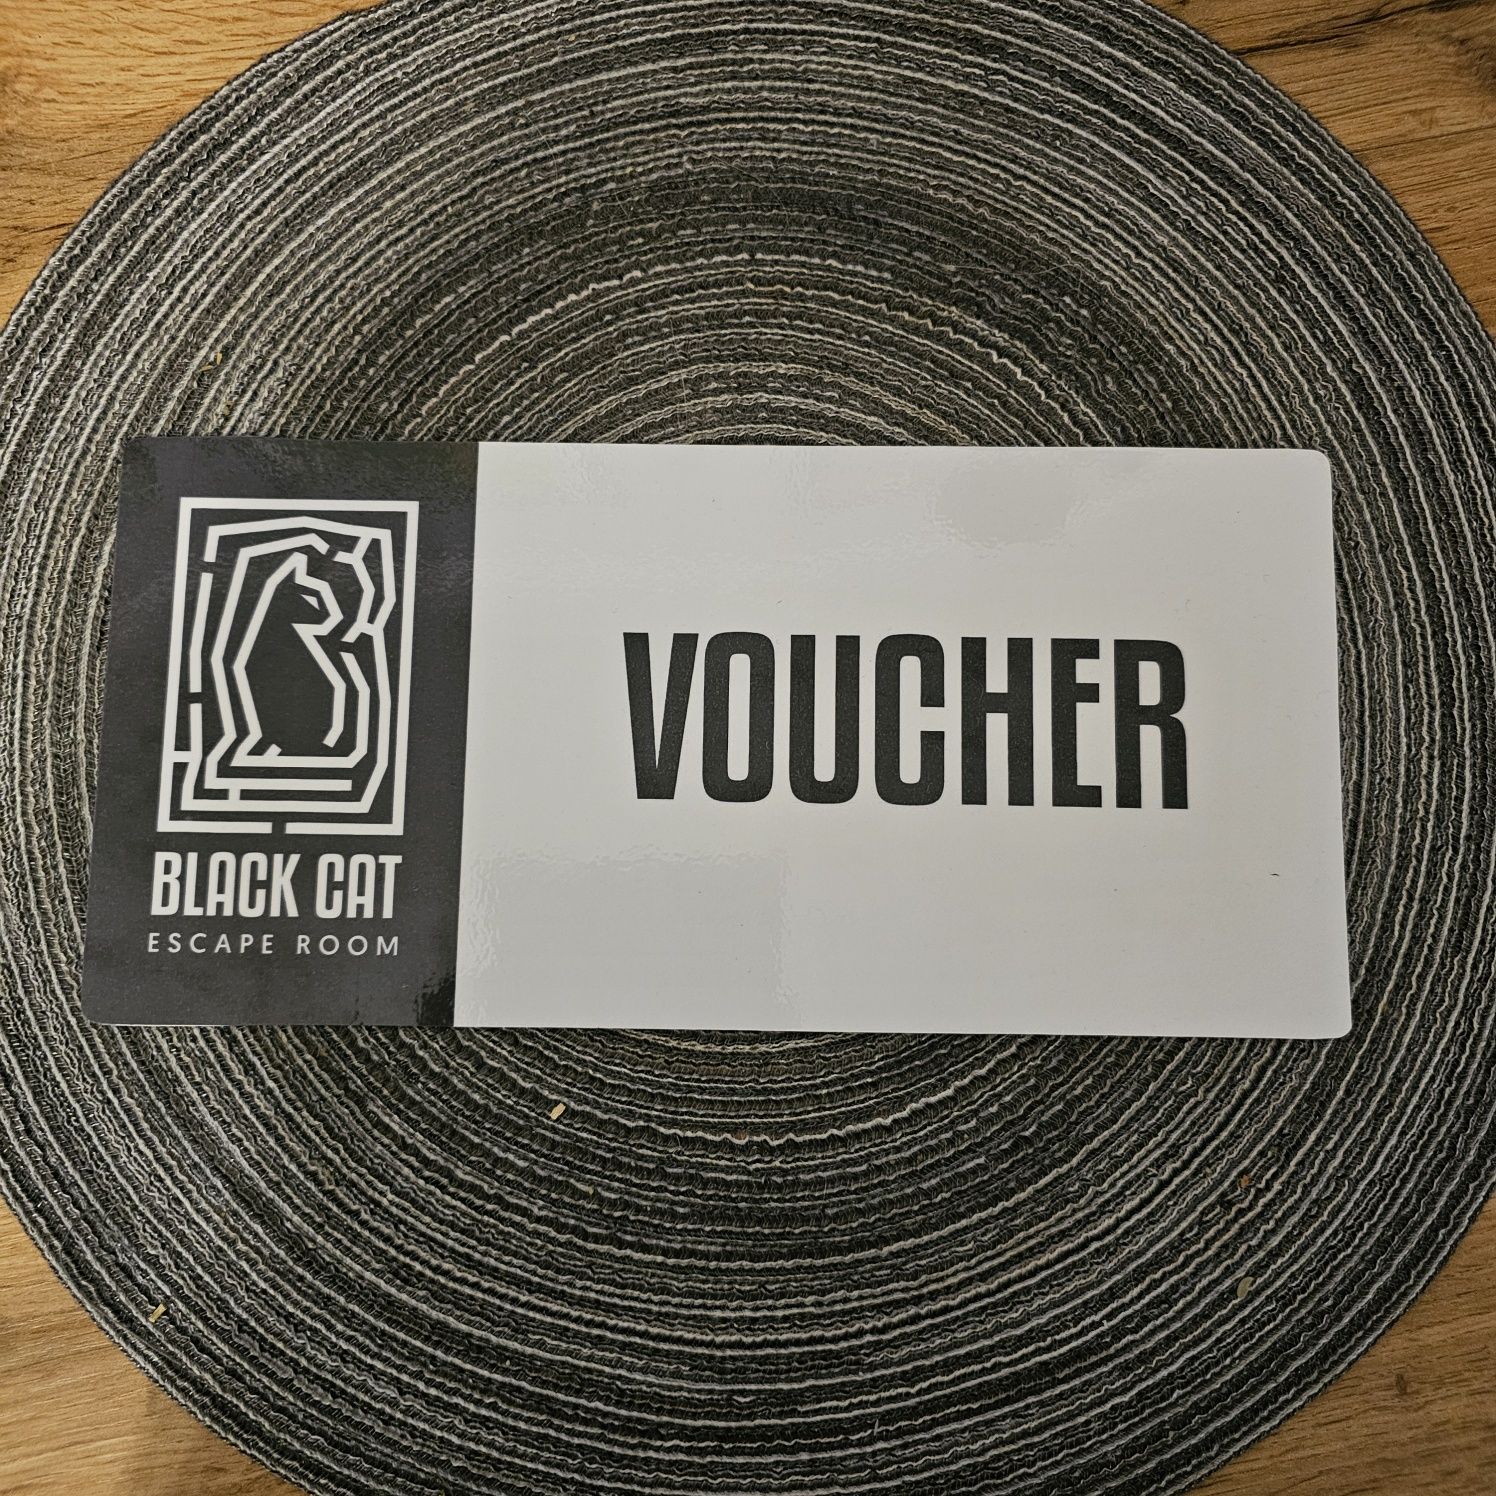 Voucher do Black Cat Escape room wartość 550 zł